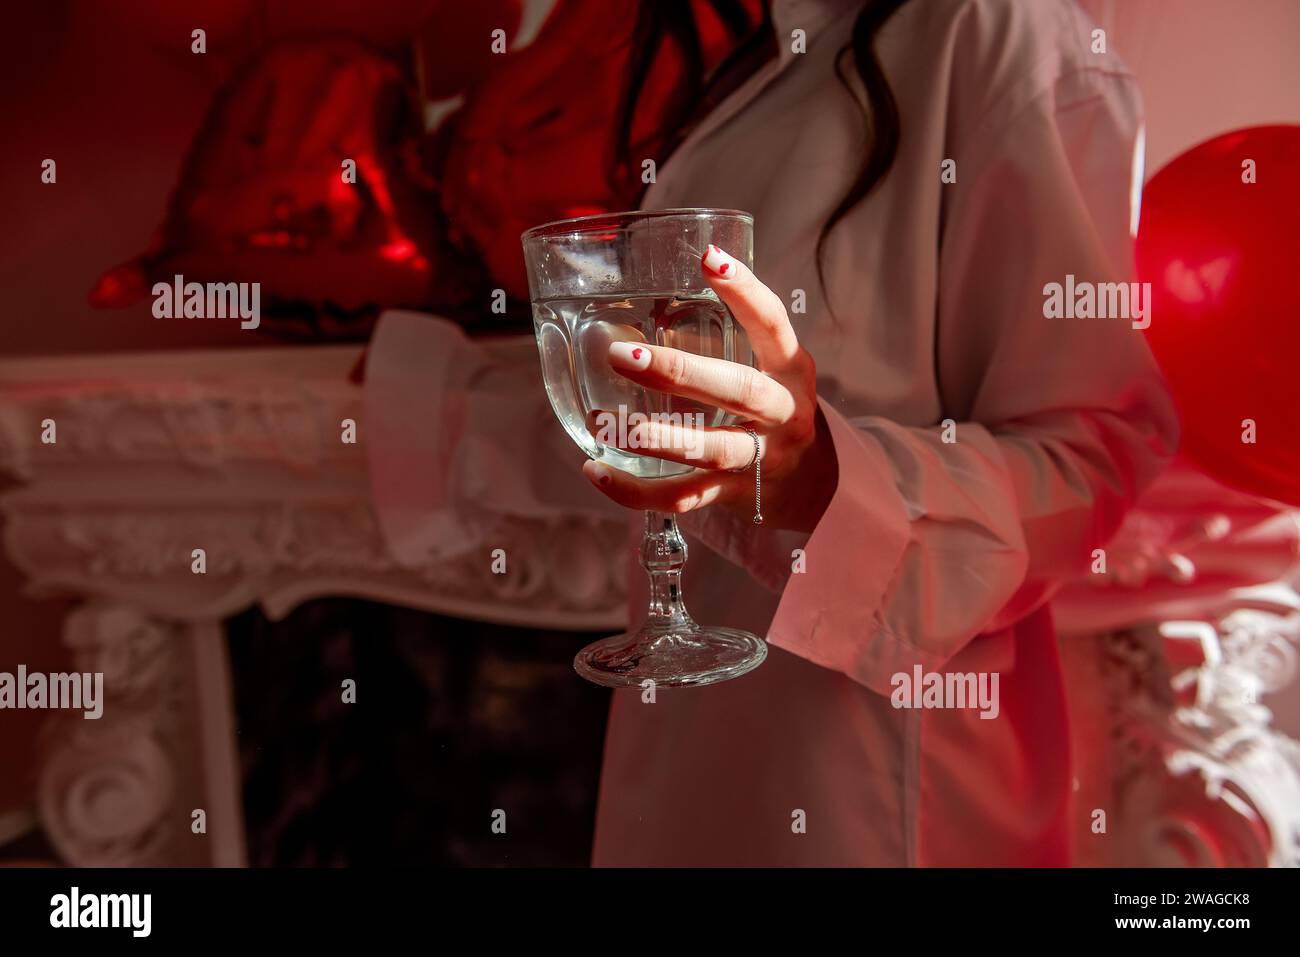 Gros plan de la main des femmes avec une coupe de champagne avec manucure festive avec des coeurs rouges sur l'ongle, bague en argent. Célébration de la Saint Valentin, engagement Banque D'Images